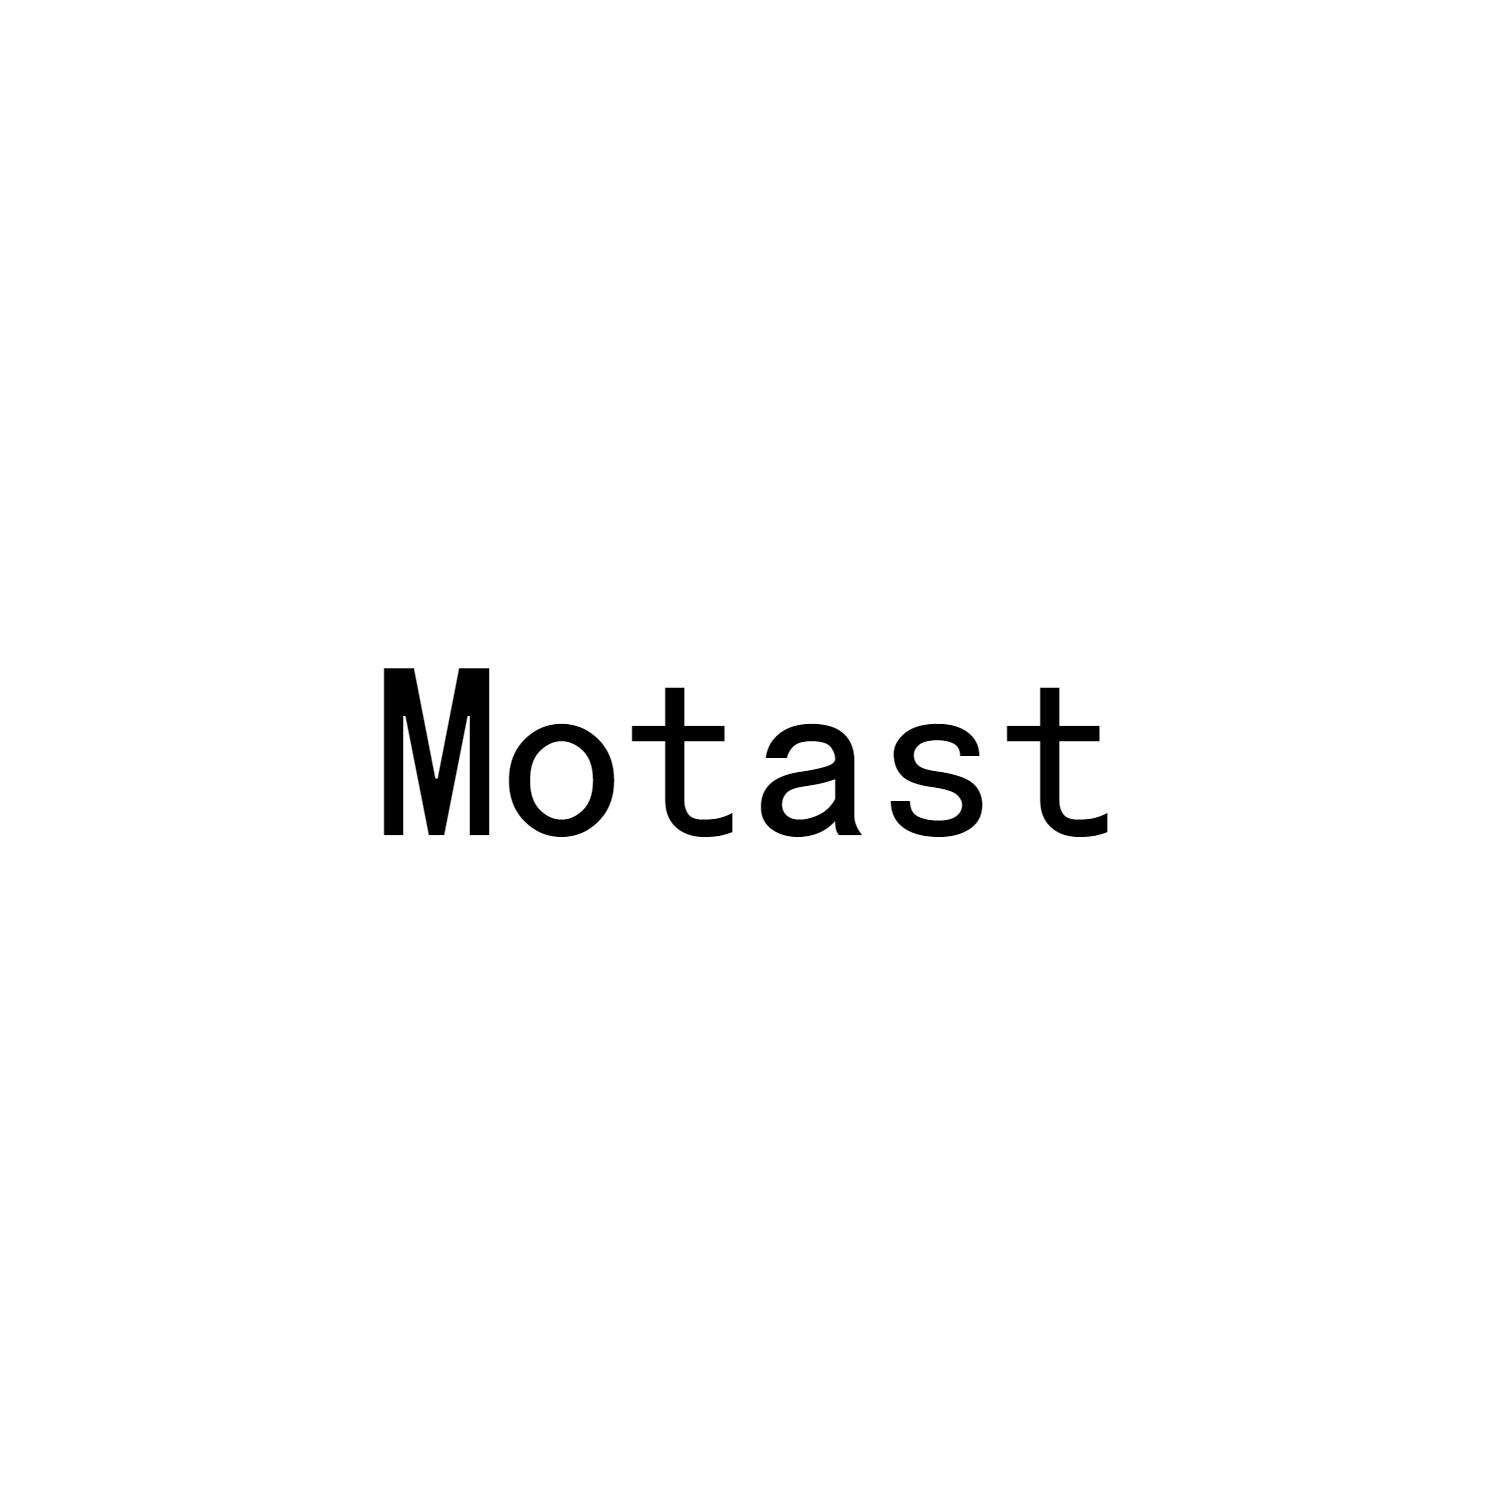 MOTAST